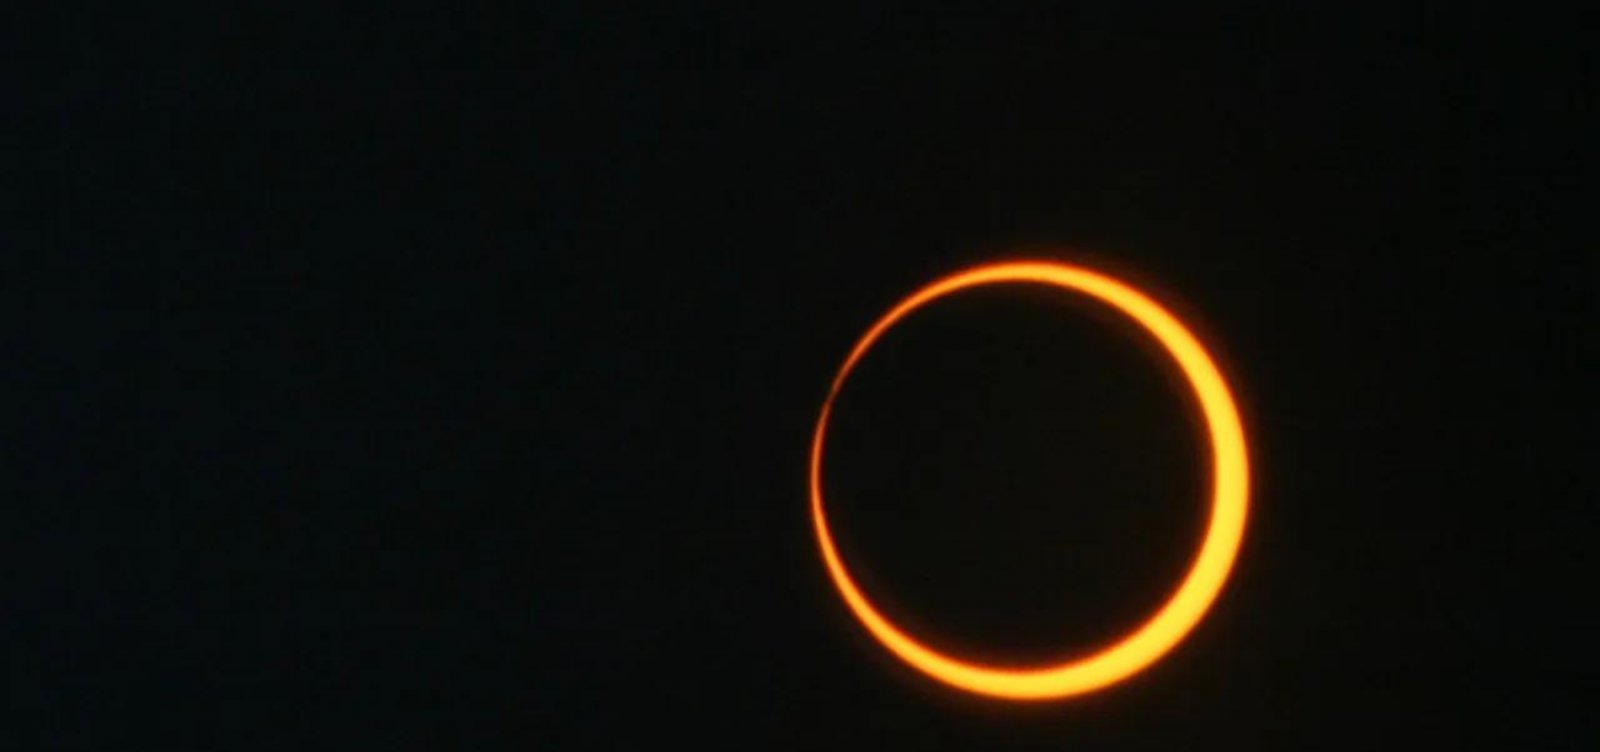 Eclipse solar anular poderá ser observado em Salvador; saiba mais Metro 1